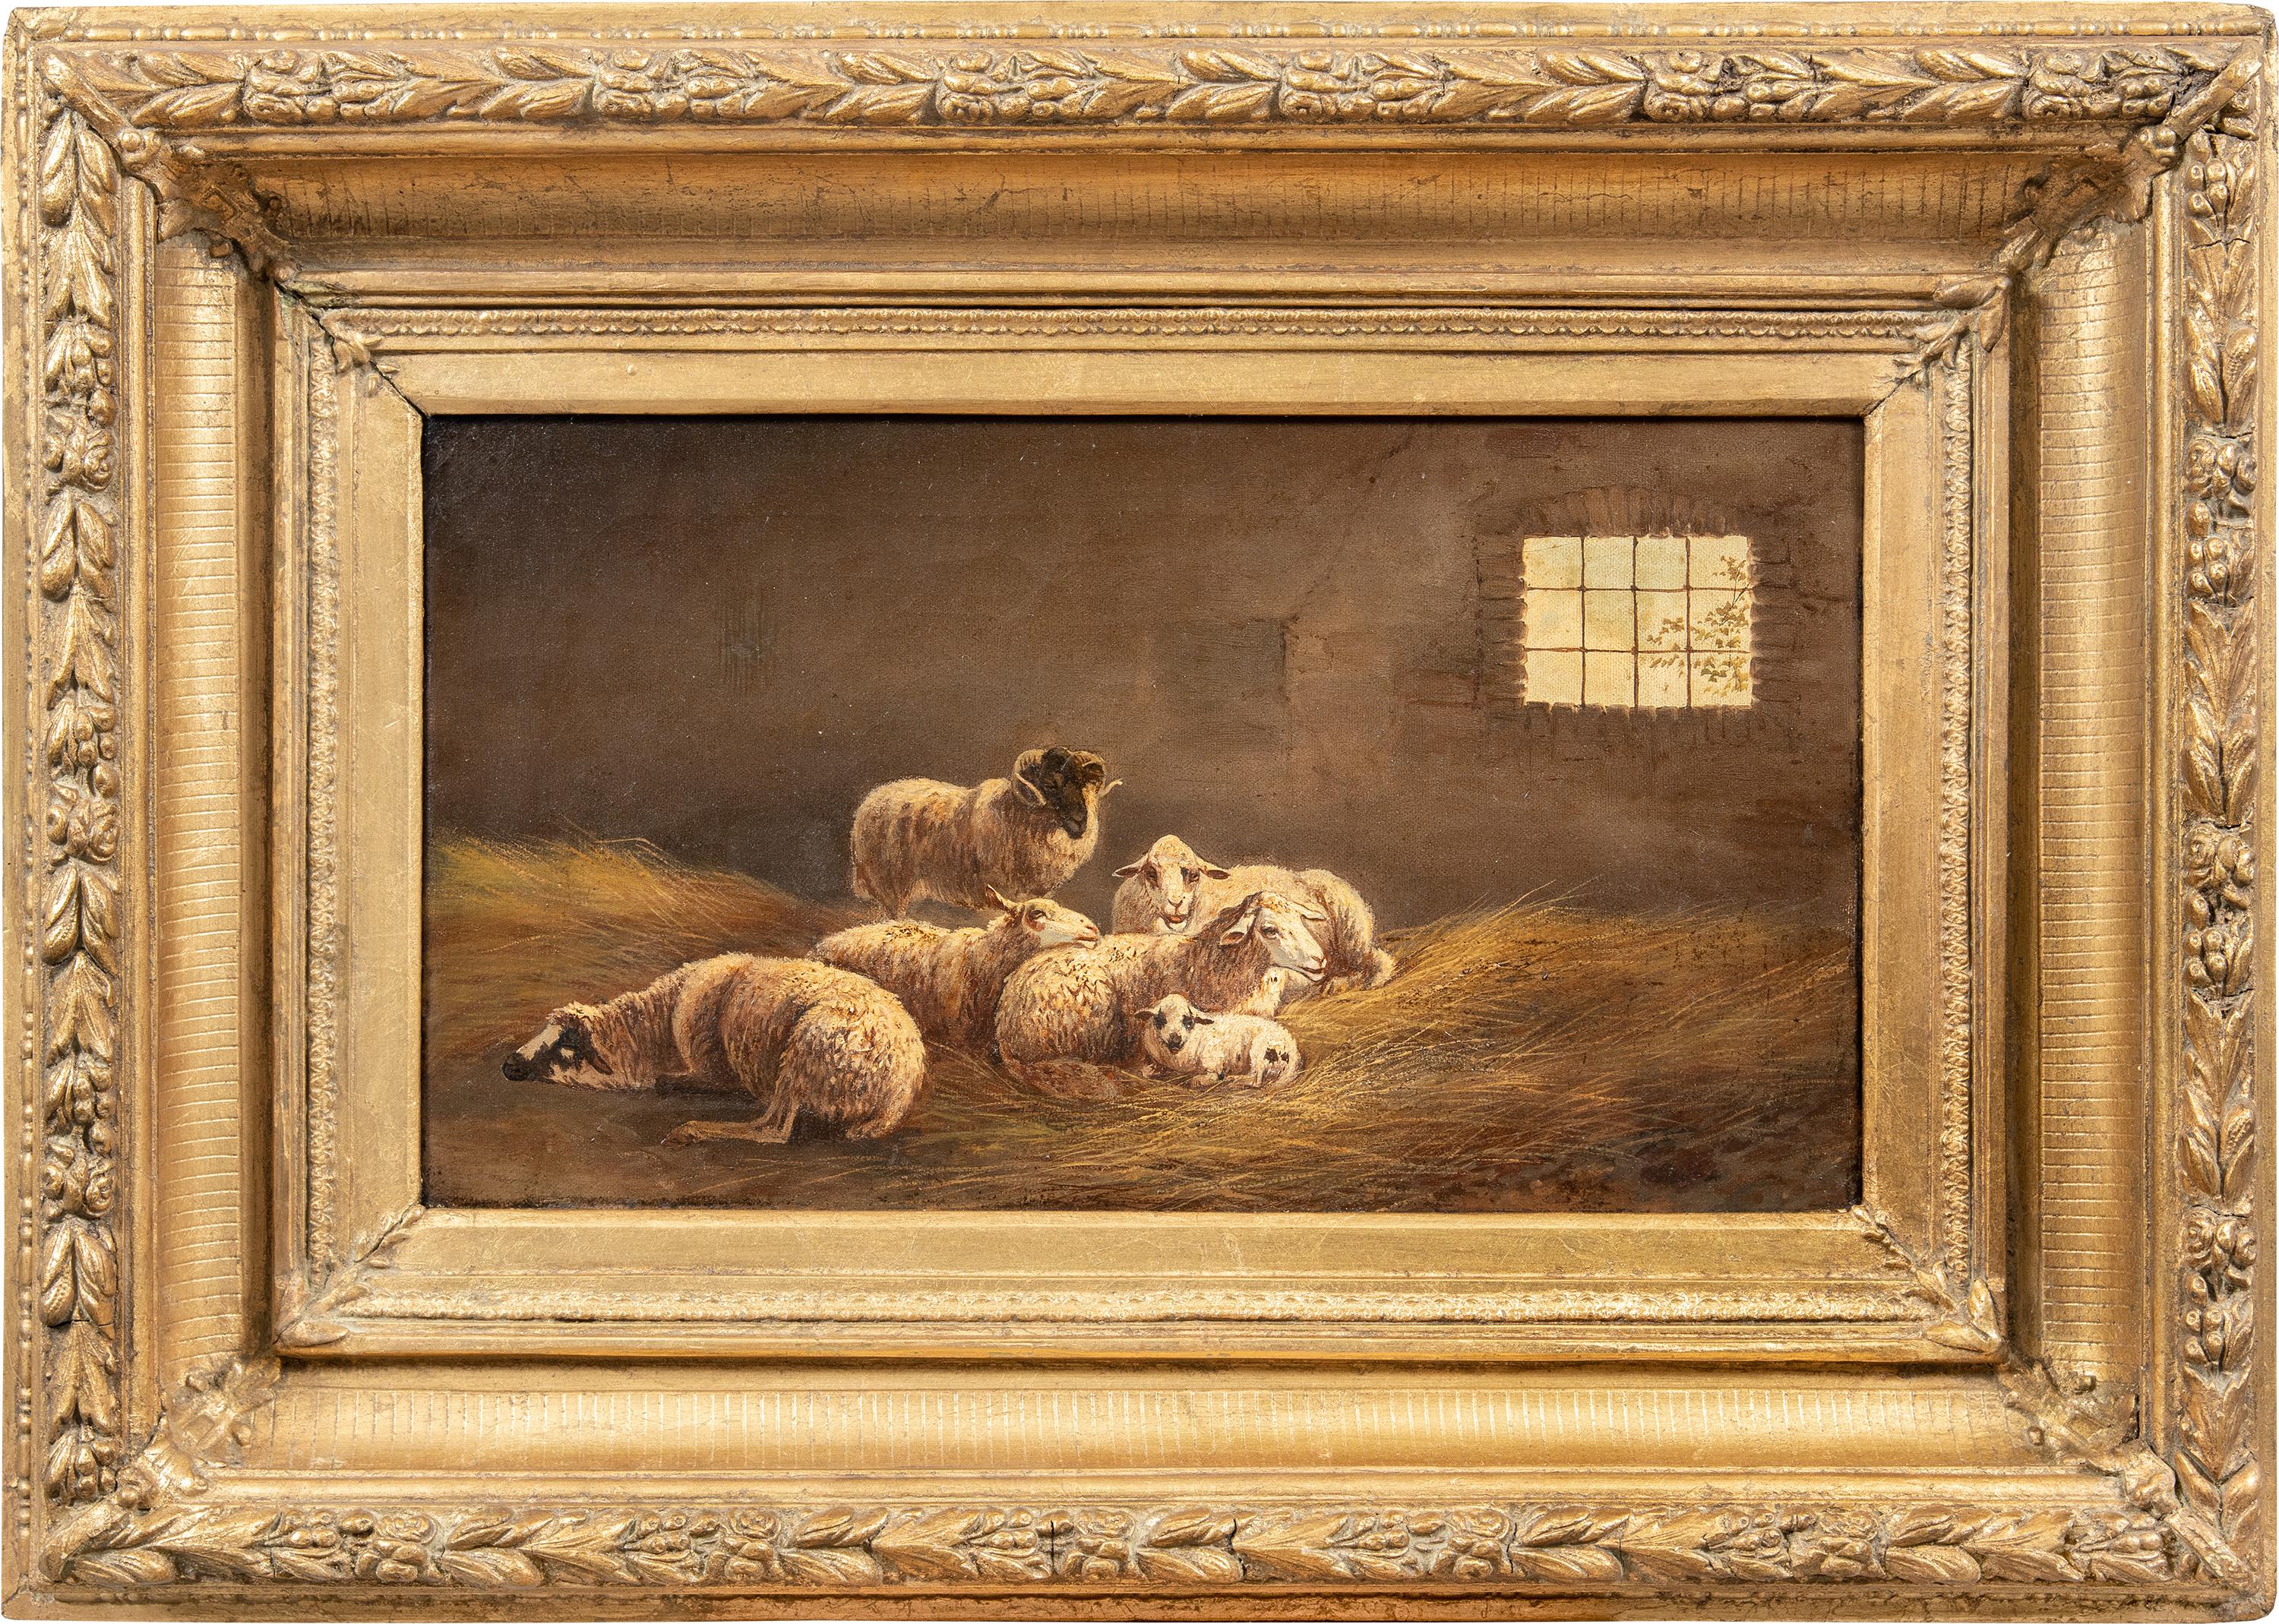 Animal Painting Unknown - Peintre réaliste italien - Peinture animalière du 19e siècle - Mouton - Huile sur toile